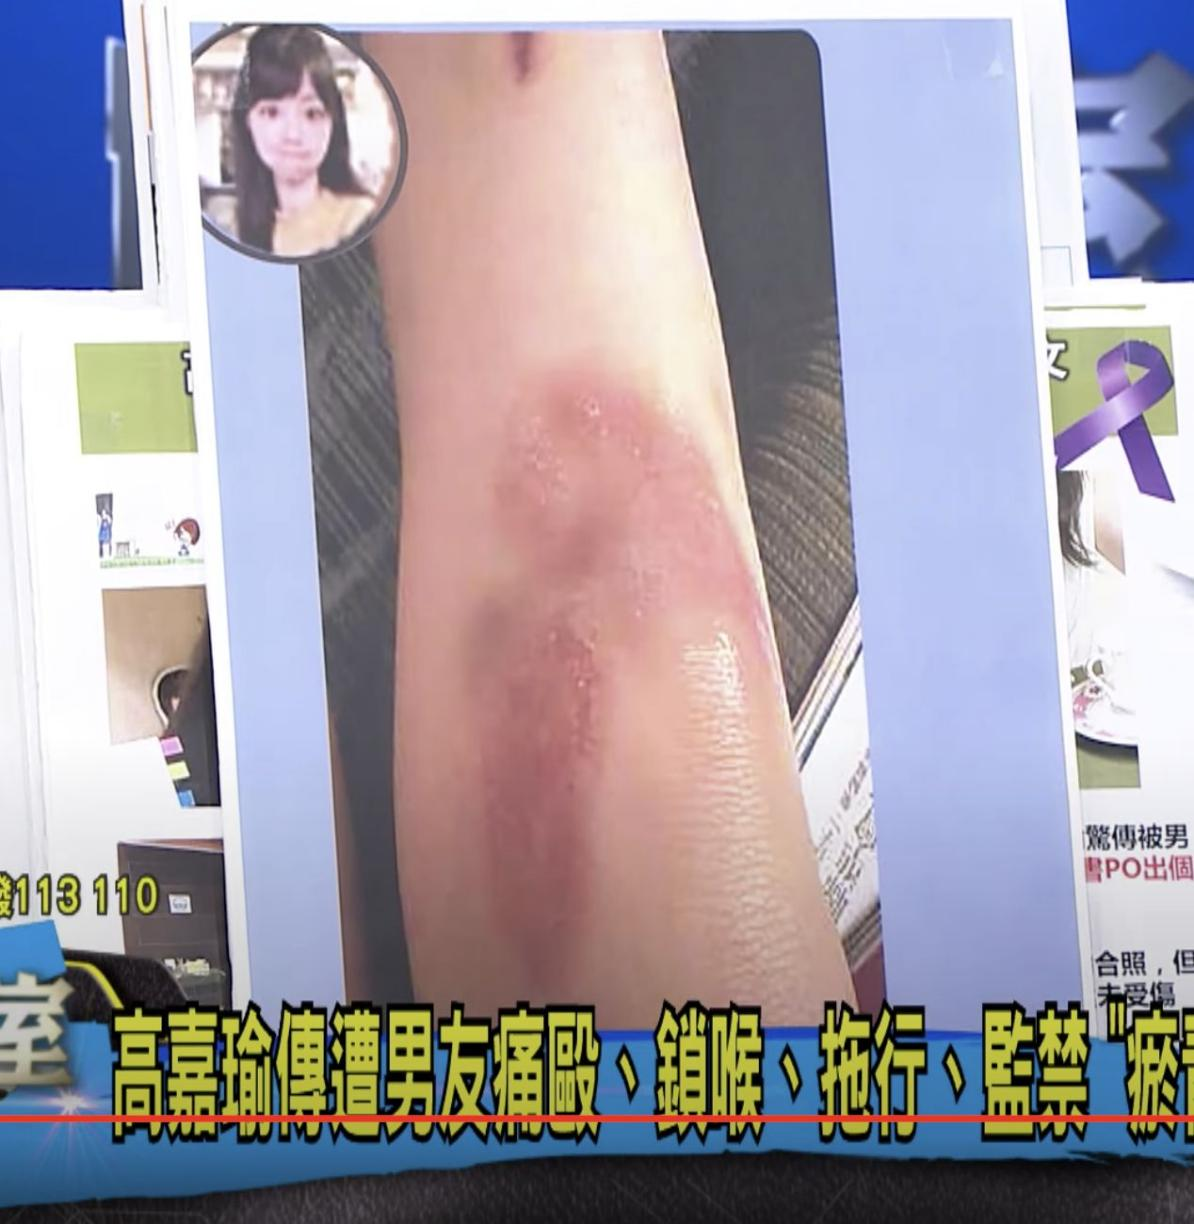 高嘉瑜被家暴打伤“严重瘀青照”曝光。图自台媒